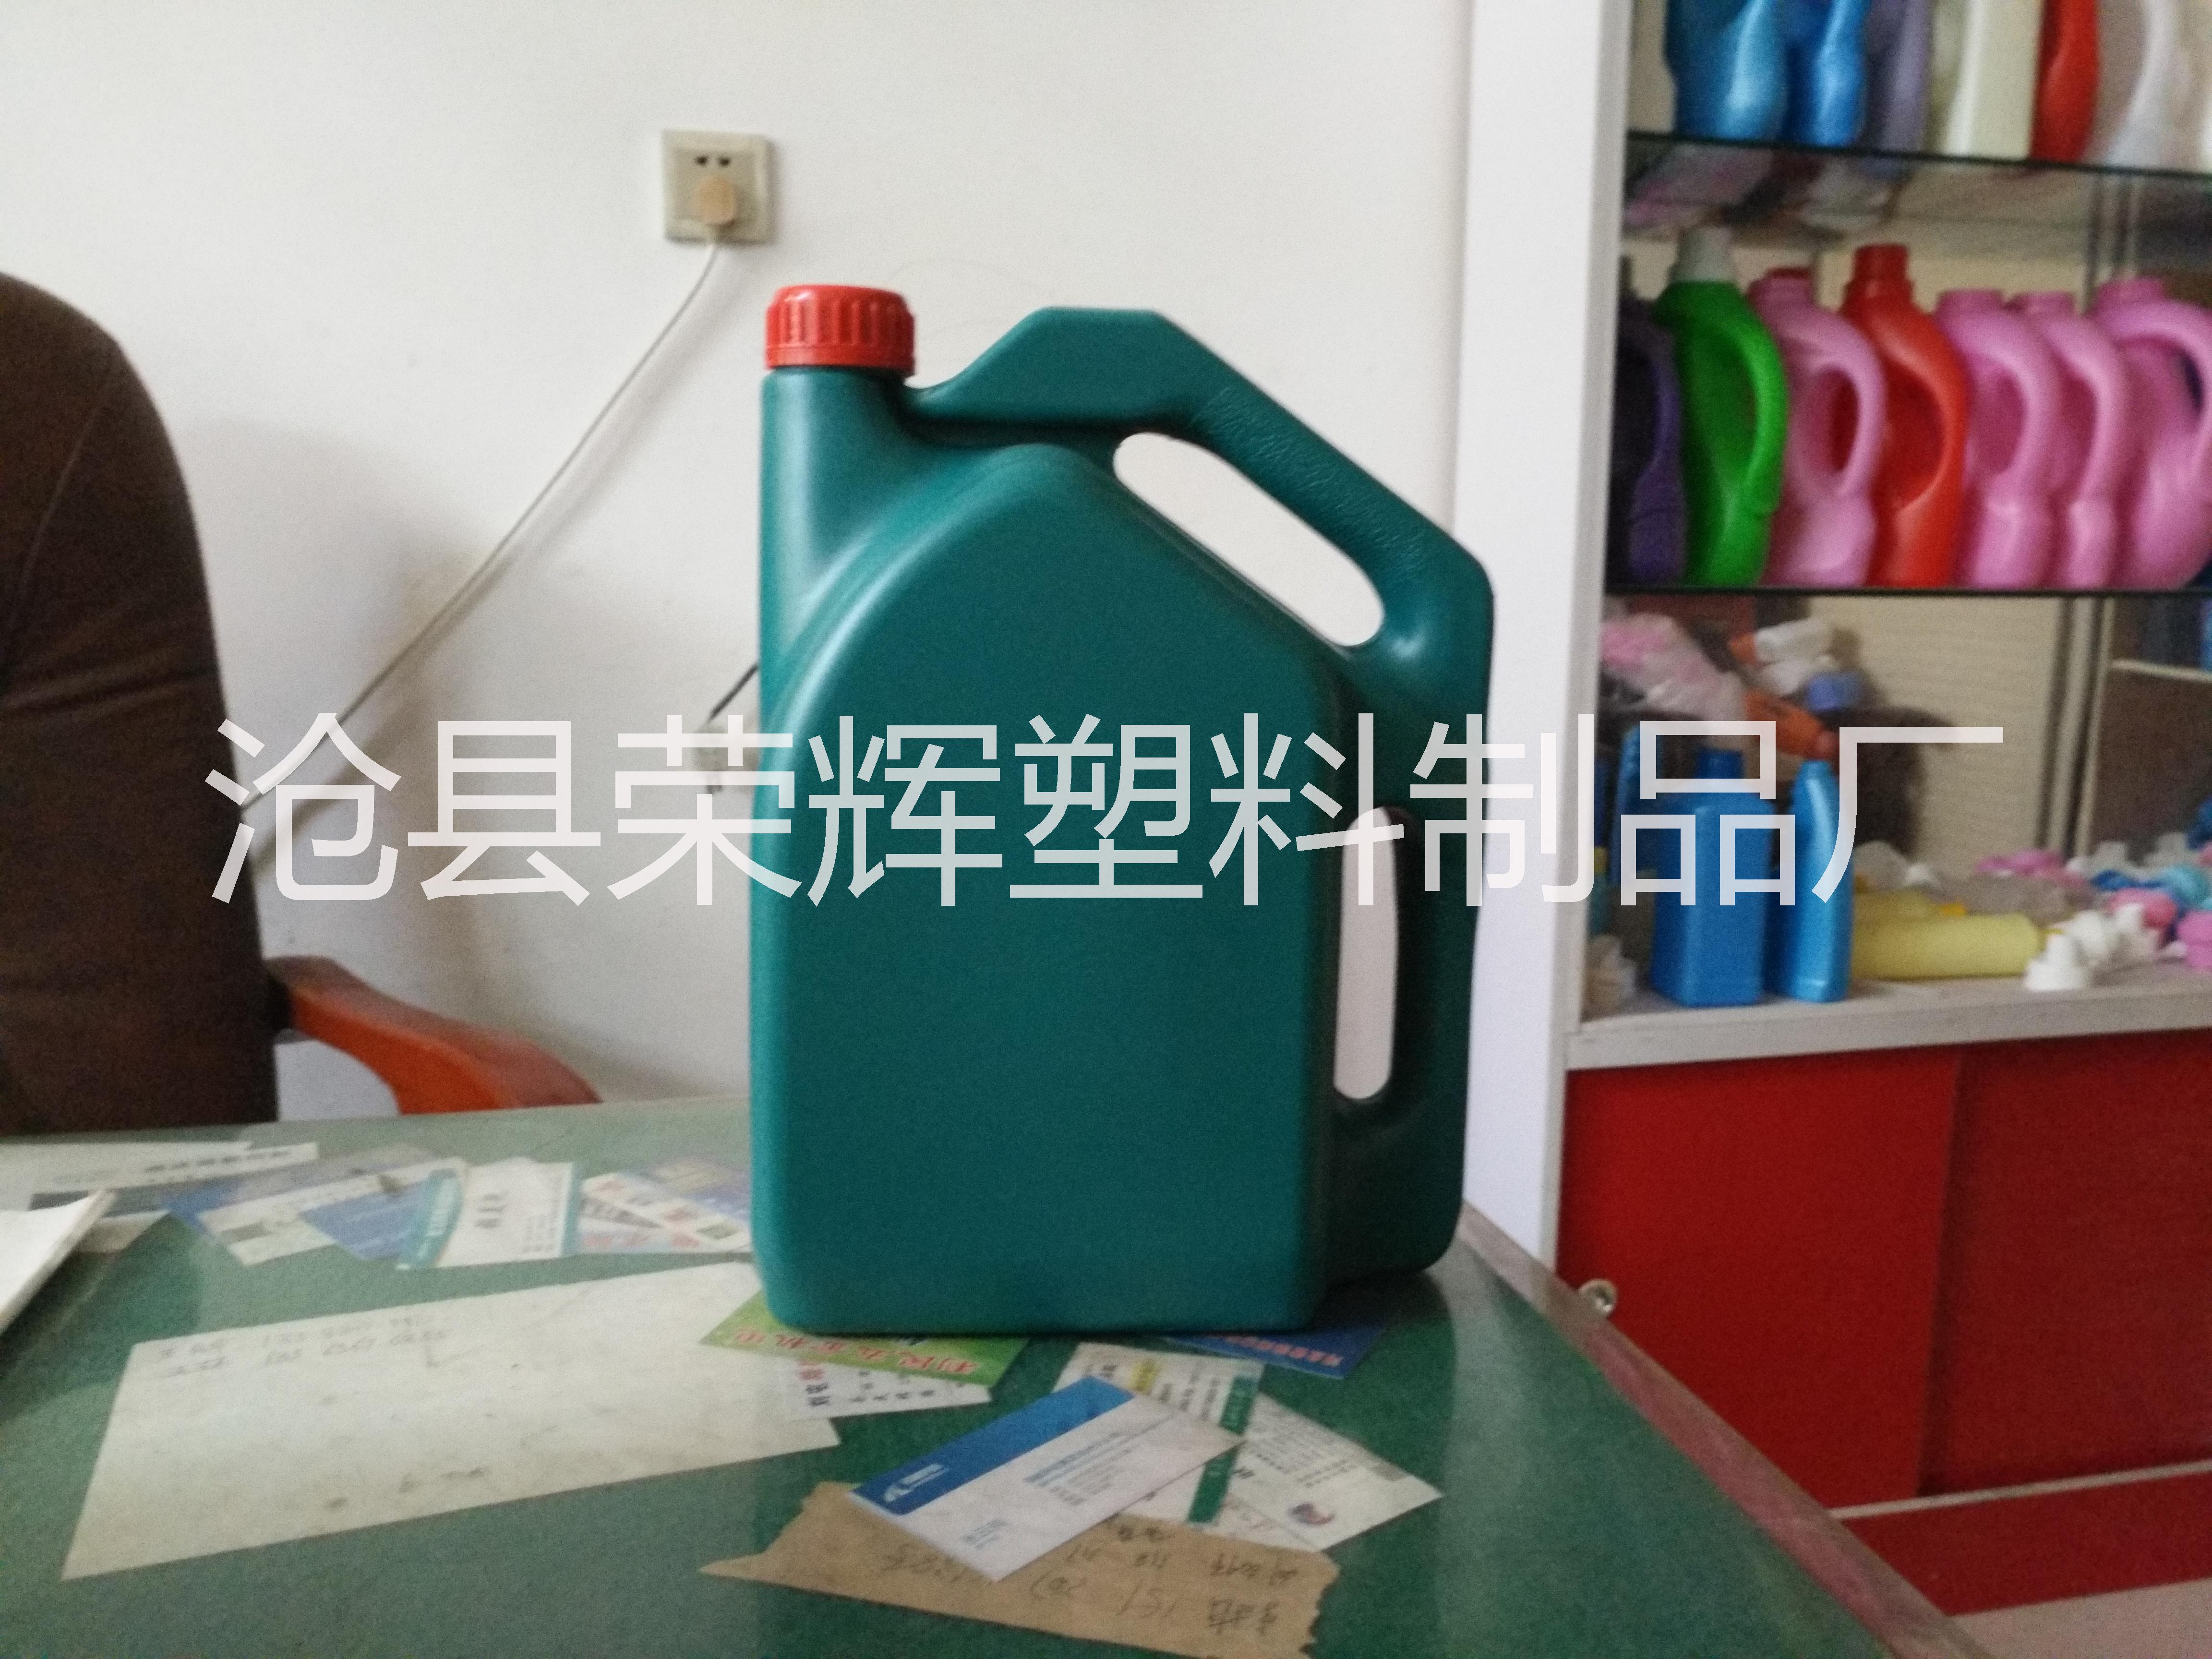 防冻液桶厂家河北沧州防冻液桶厂家尿素桶生产厂家10升尿素桶厂家9升尿素桶厂家